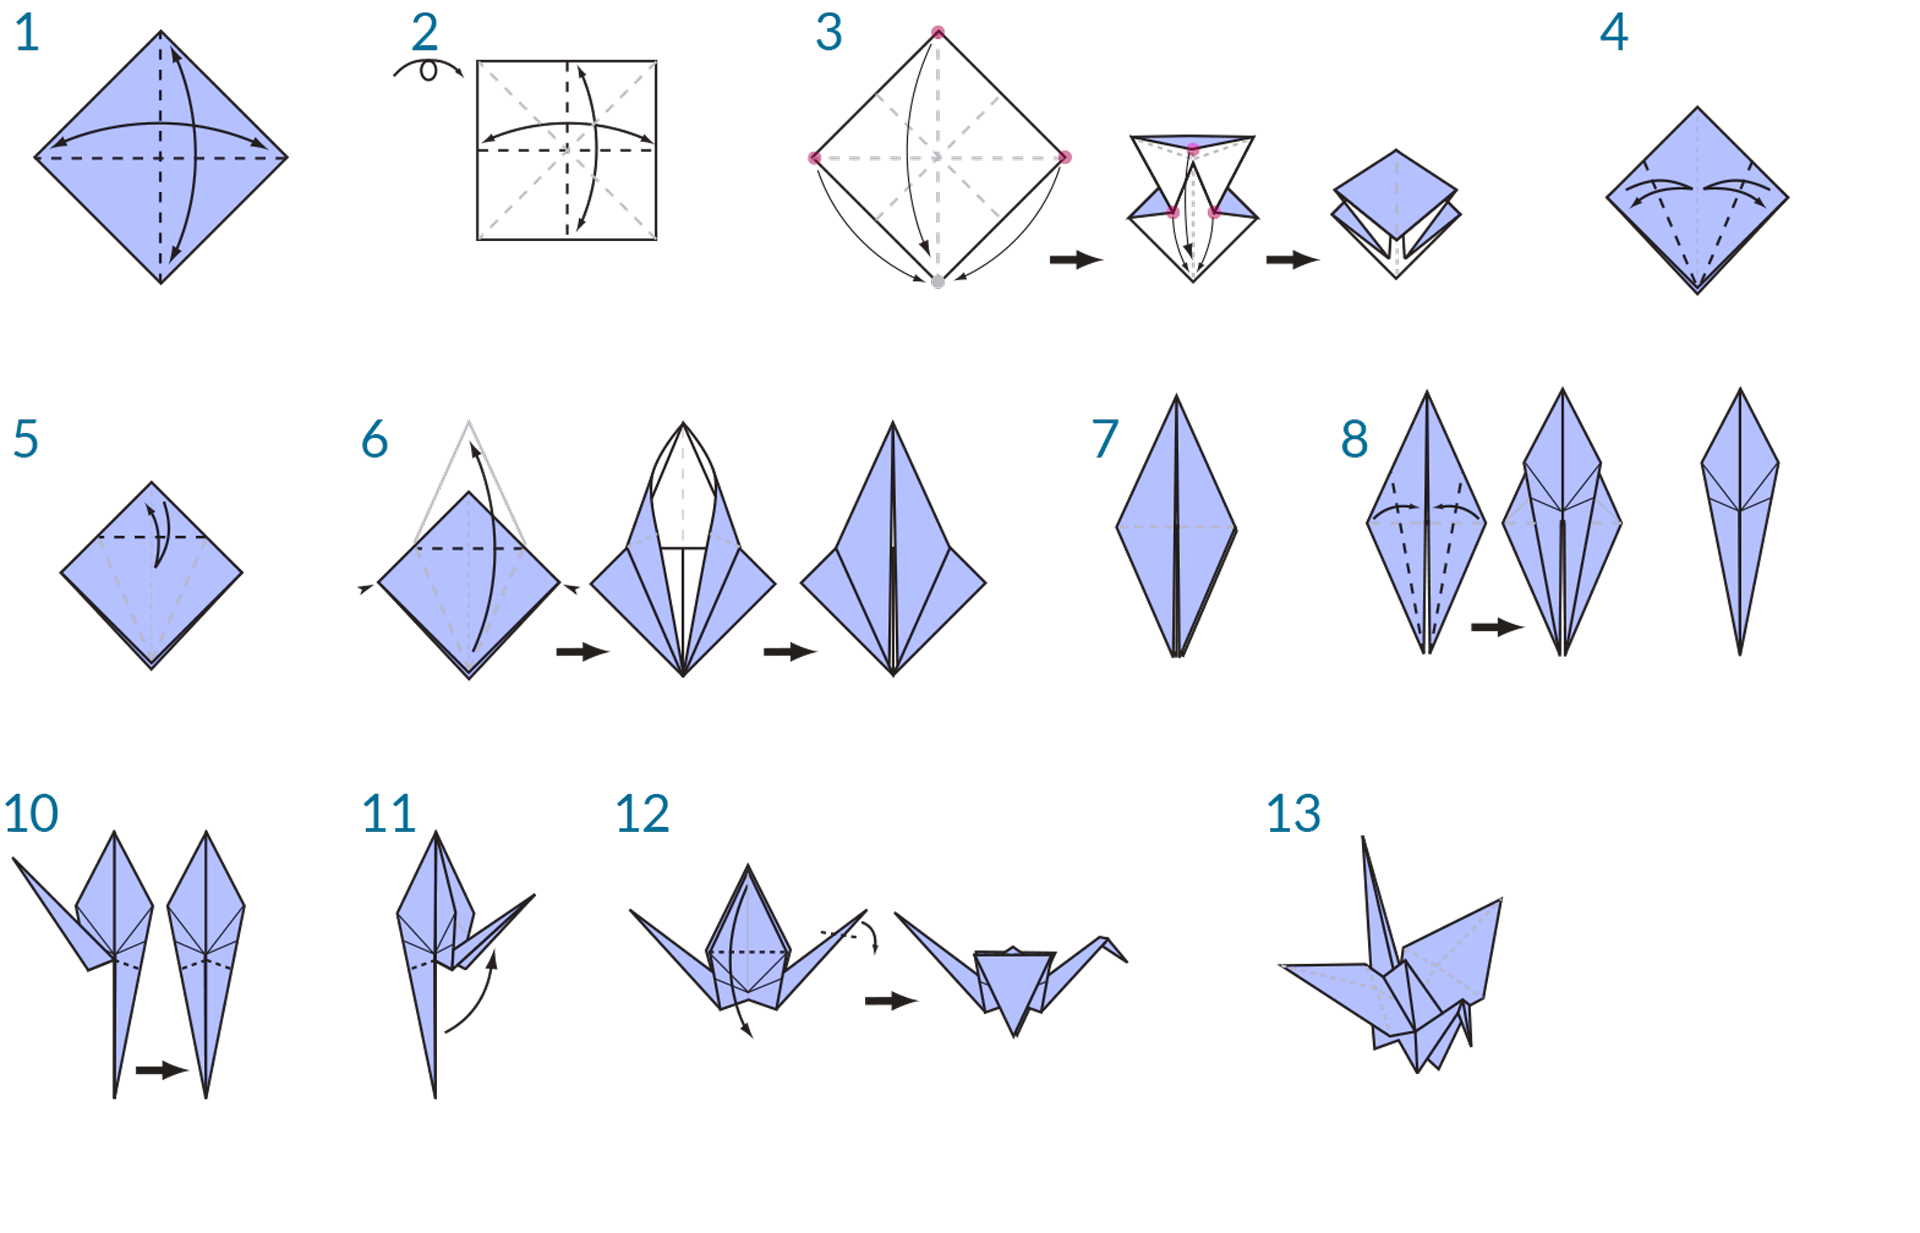 Оригами журавль из бумаги: как сделать поэтапно по схеме для начинающих японский журавлик | все о рукоделии